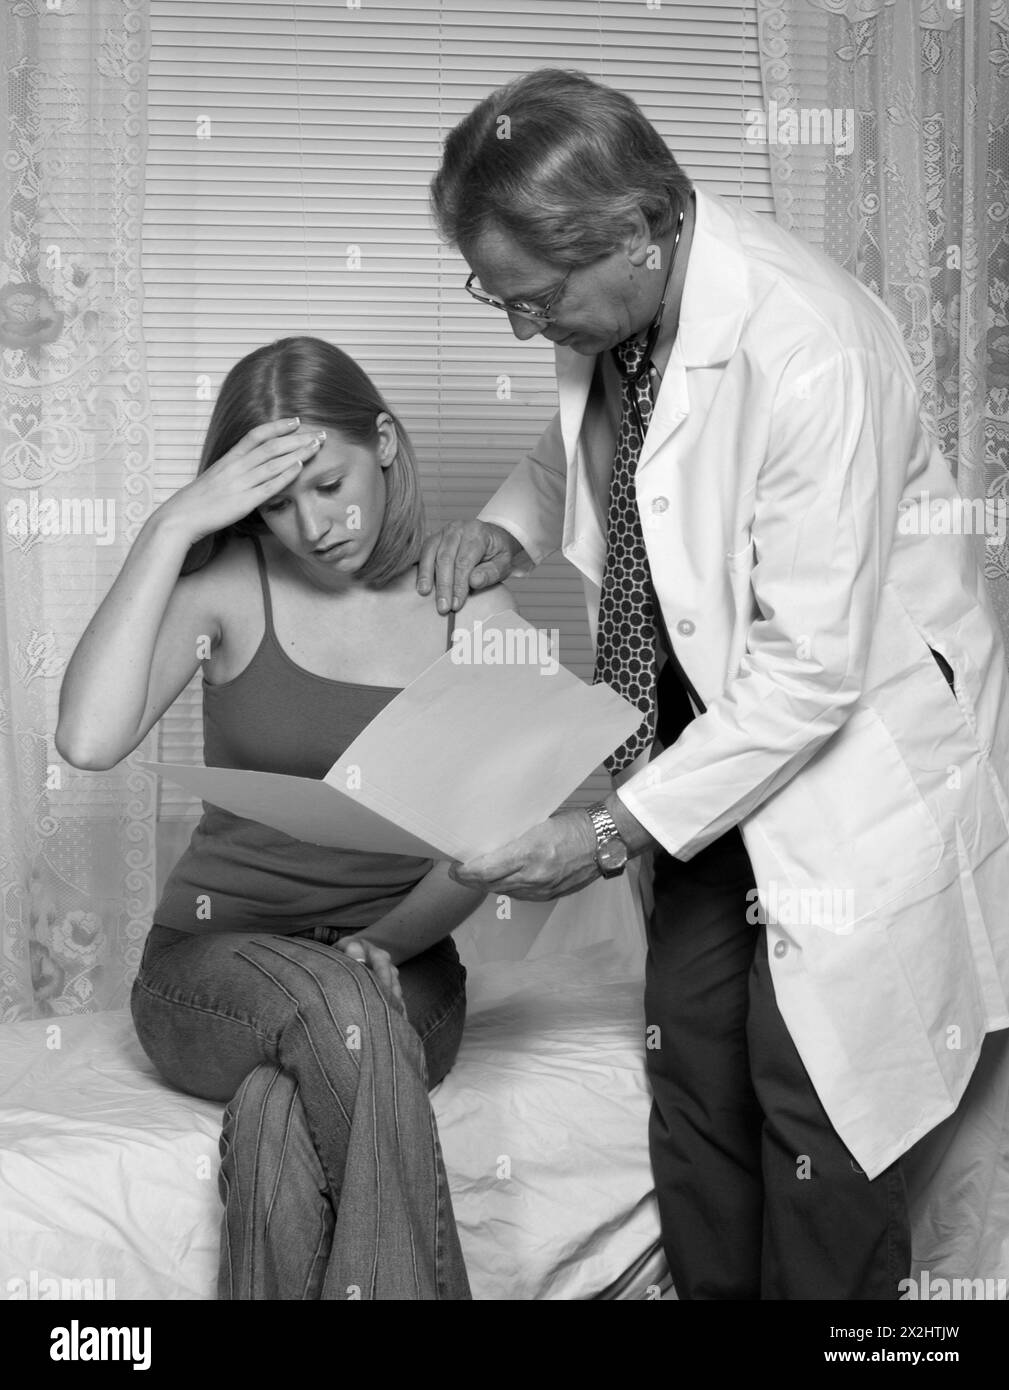 Medico caucasico maschile che esamina i risultati del paziente femminile Foto Stock